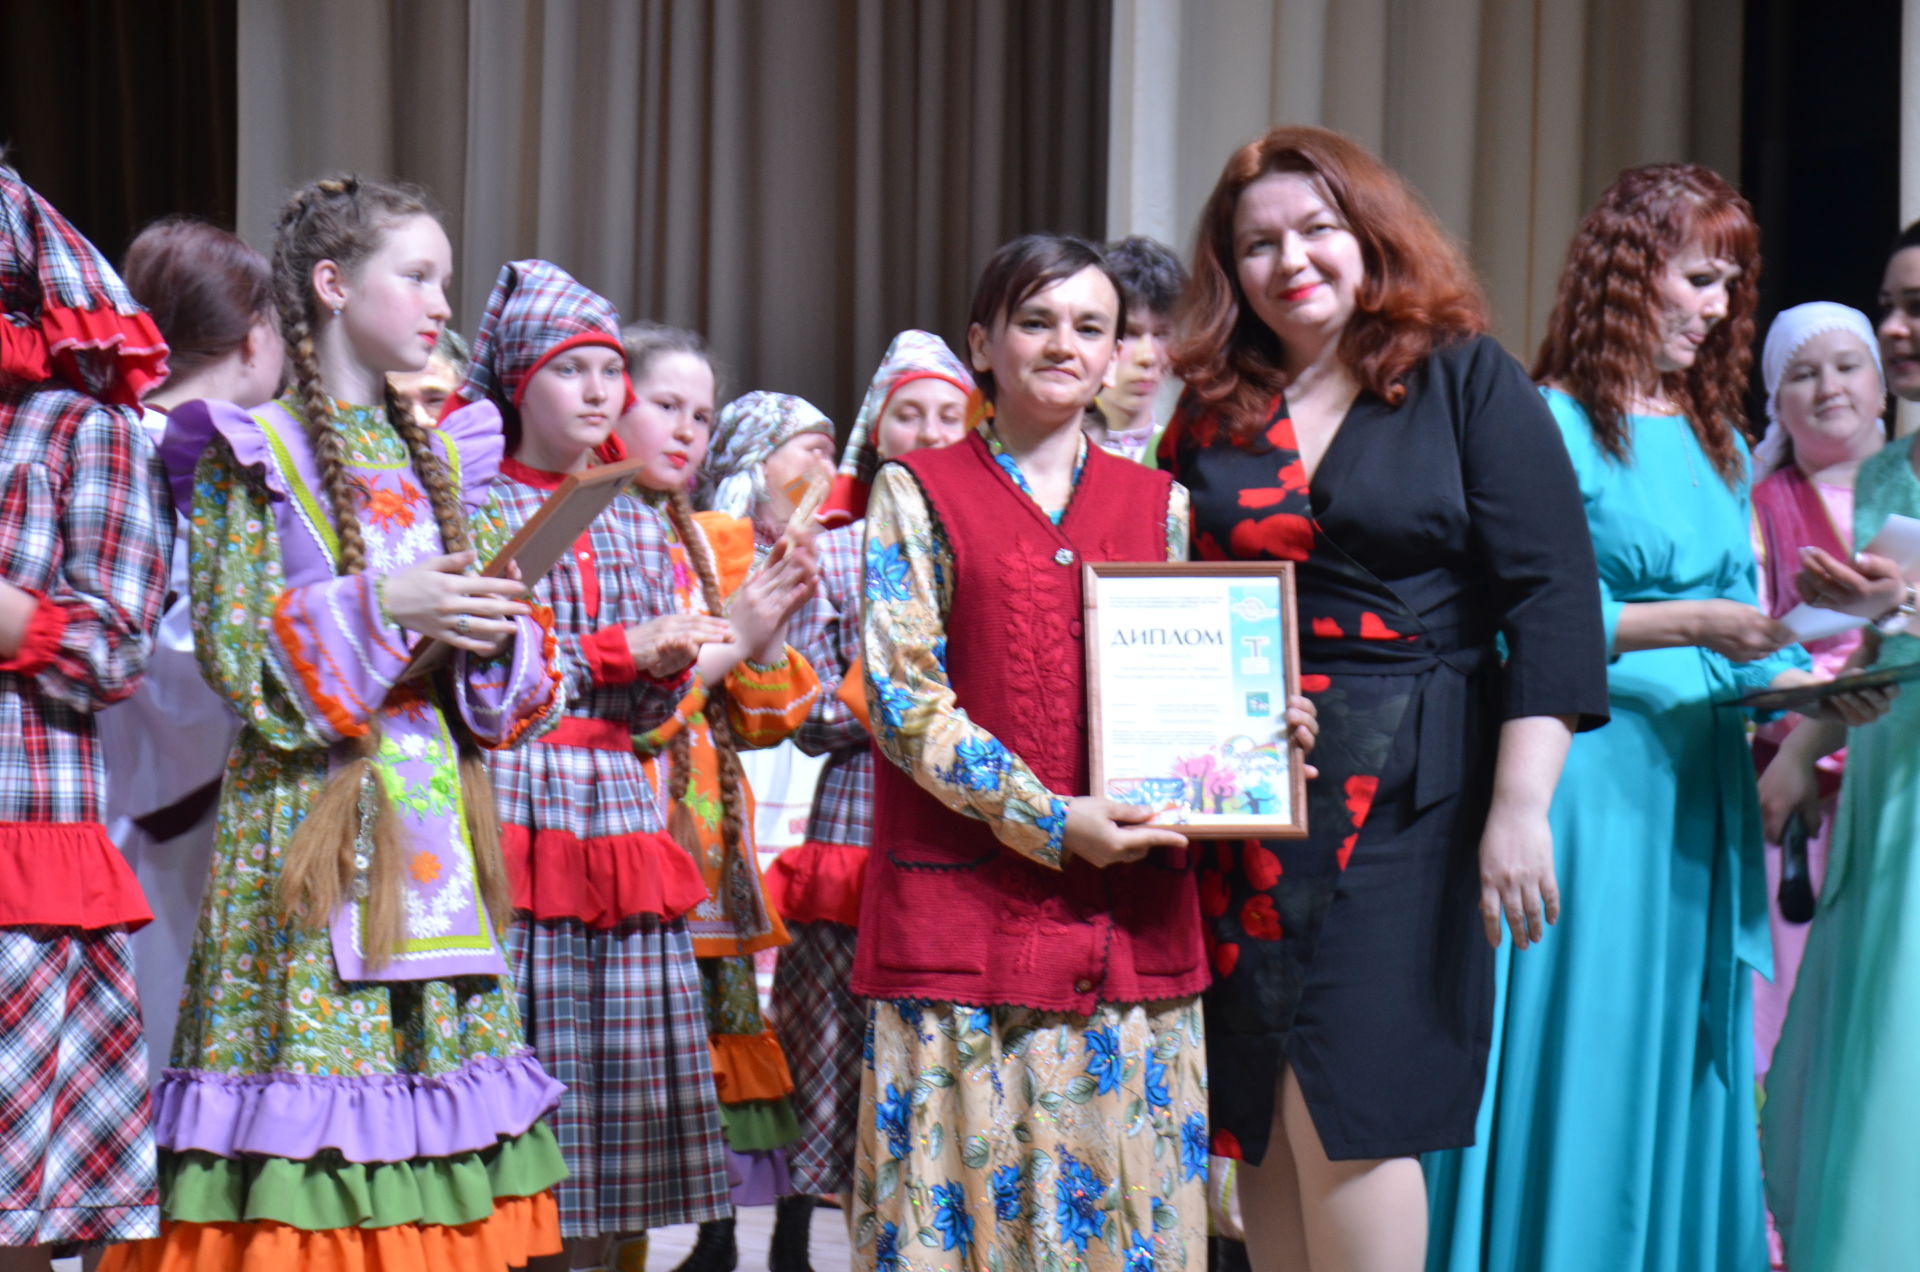 Названы победители в номинациях фестиваля «Радуга культур» в Агрызе